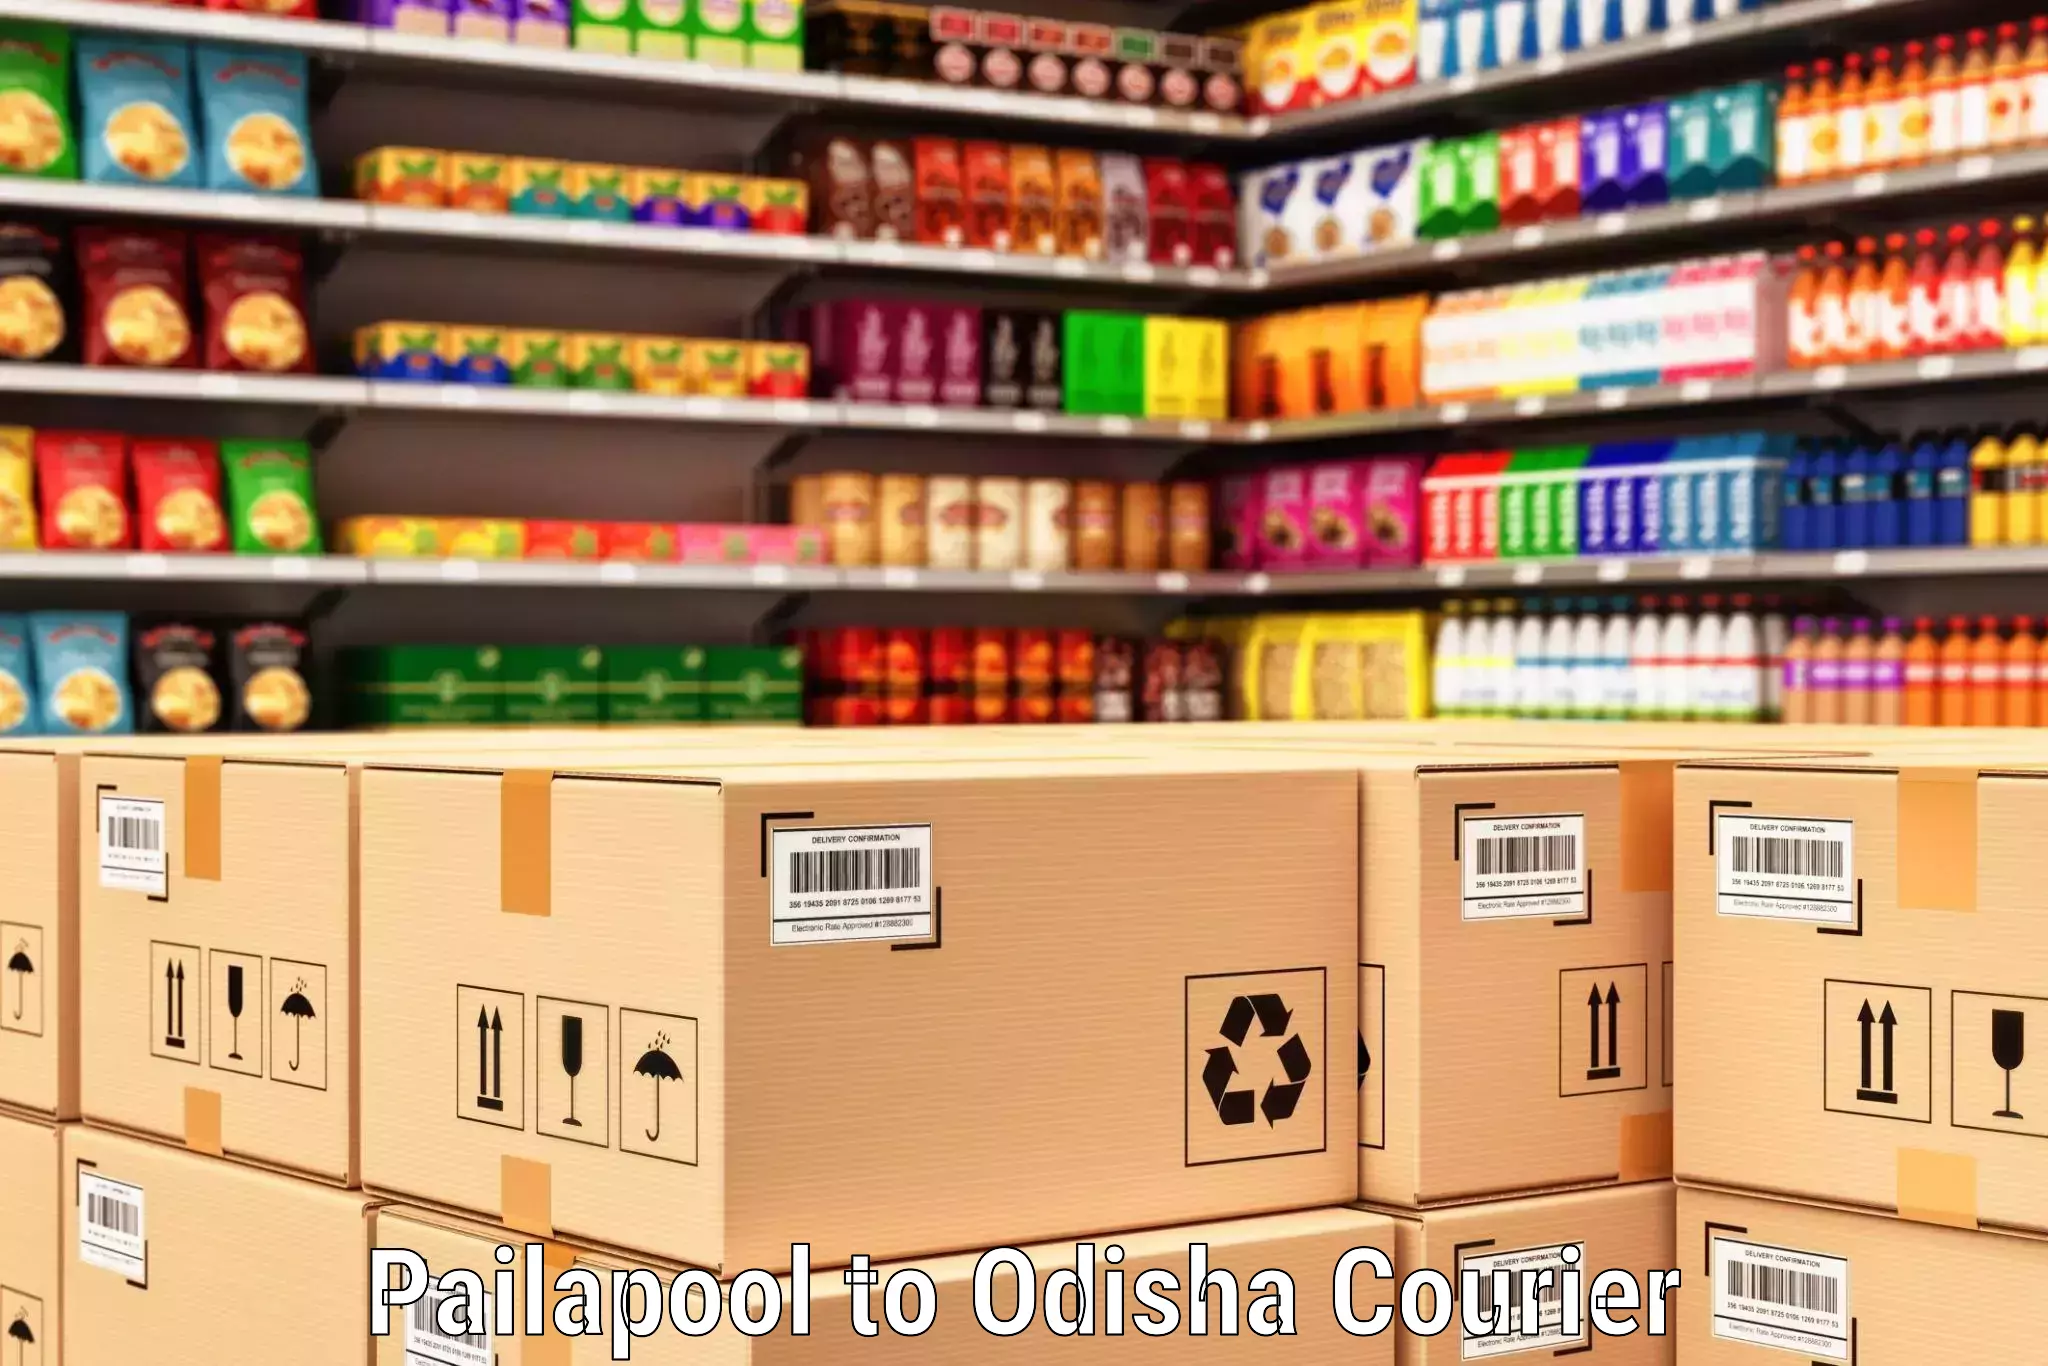 24-hour courier service Pailapool to Odisha